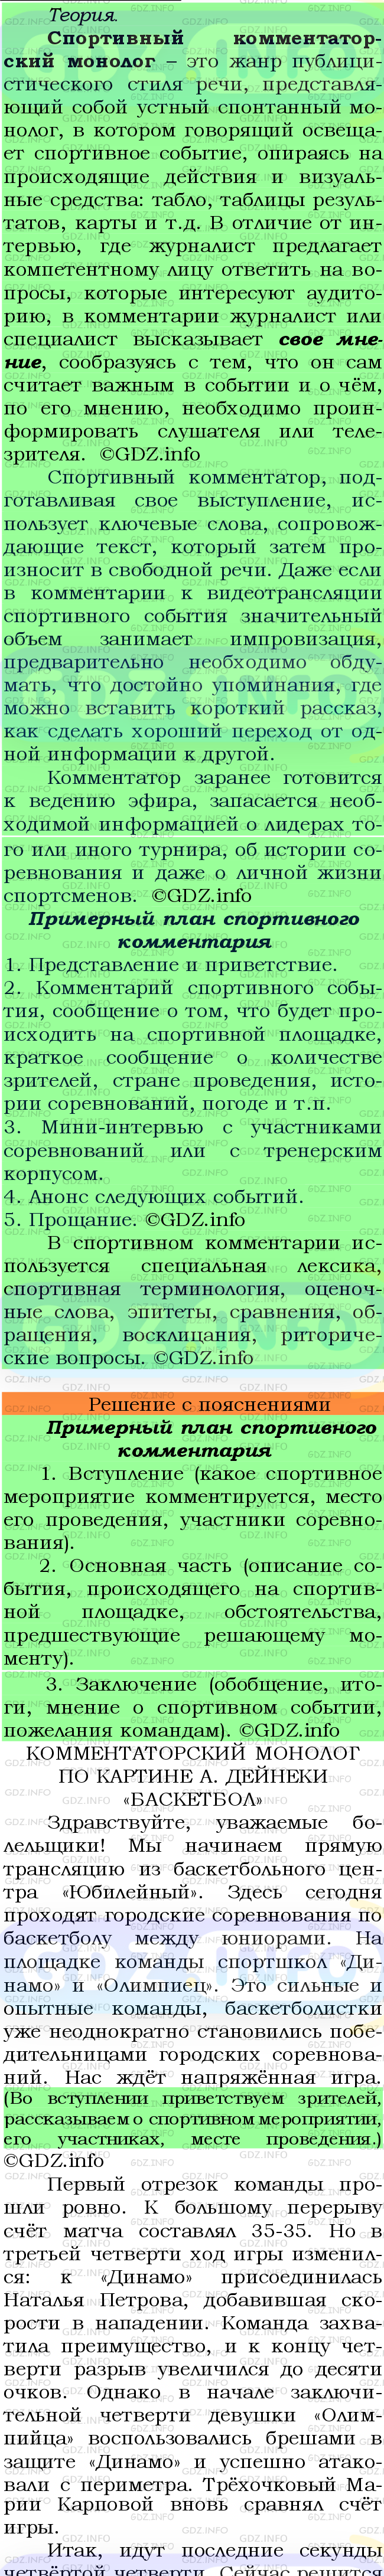 Фото подробного решения: Номер №434 из ГДЗ по Русскому языку 7 класс: Ладыженская Т.А.